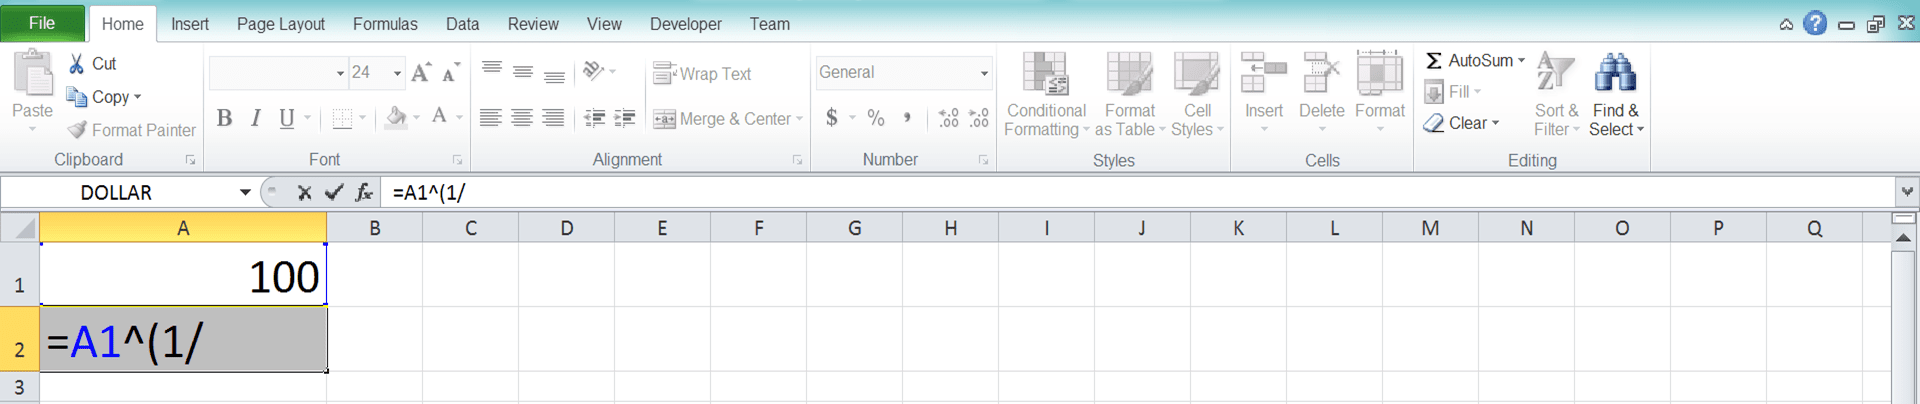 Cara Menghitung Akar di Excel Beserta Berbagai Rumus dan Fungsinya - Screenshot Langkah 1-3